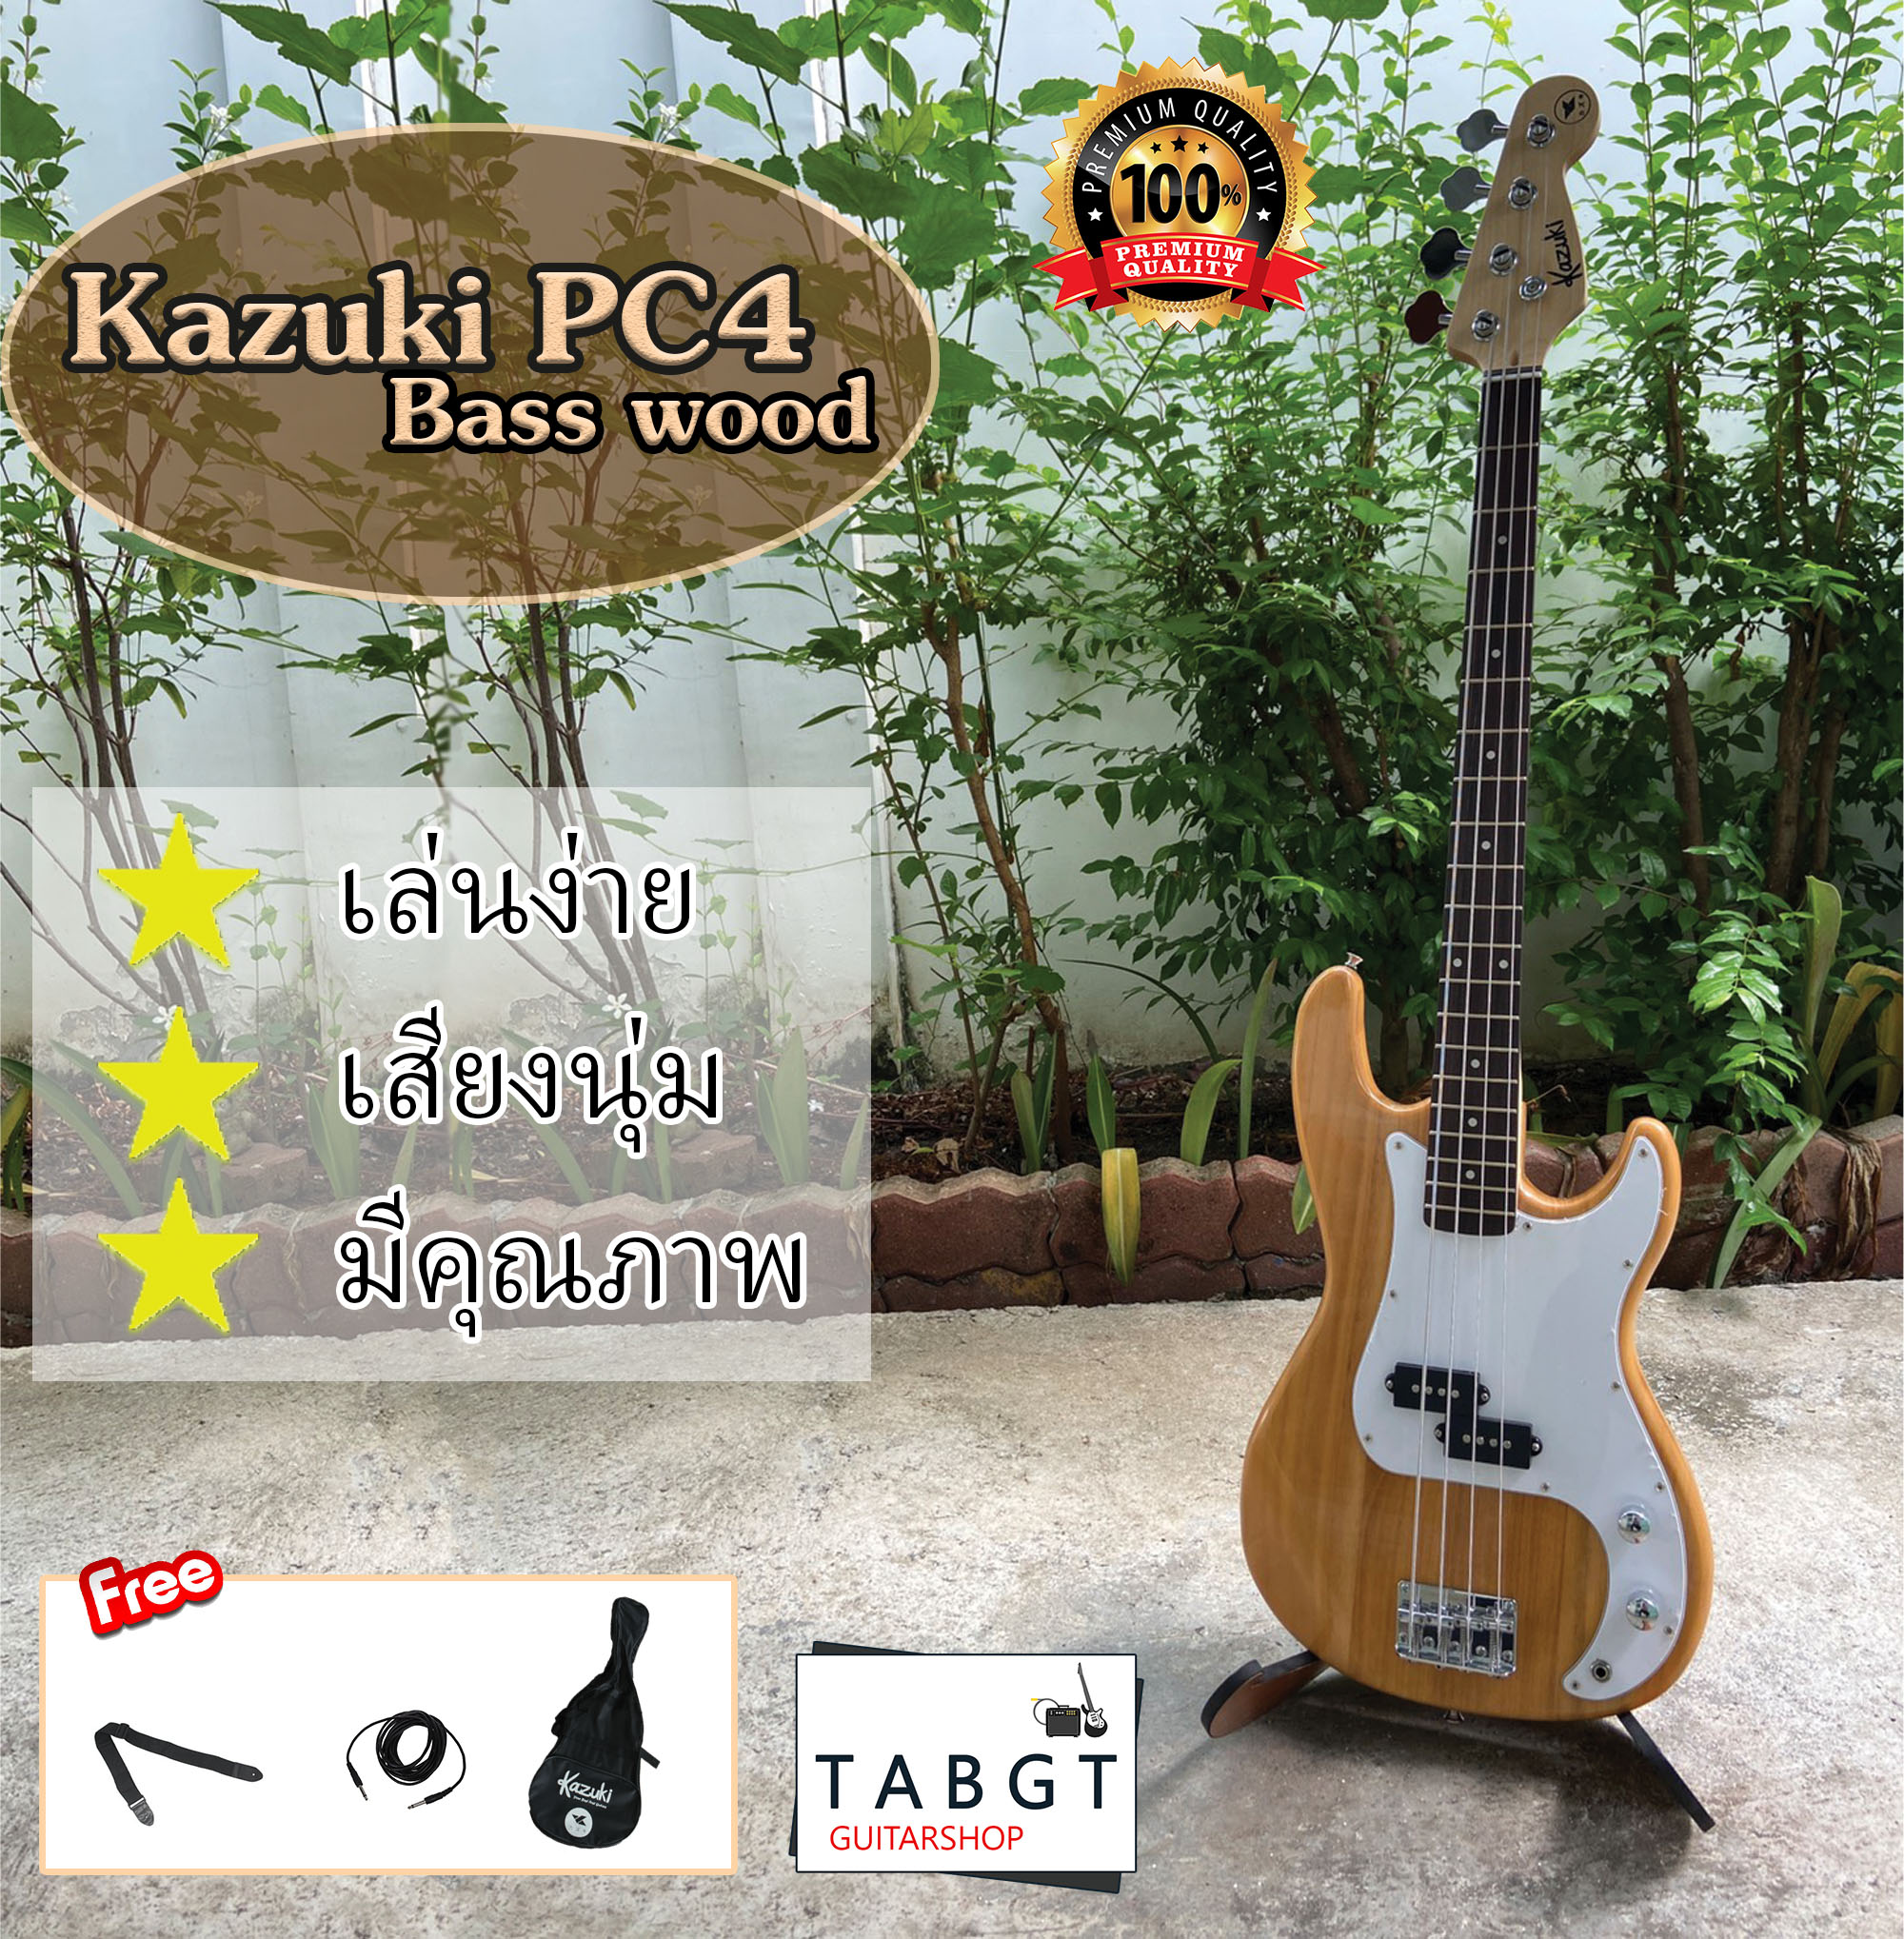 เบสไฟฟ้า Kazuki PC4 (มีของแถม)